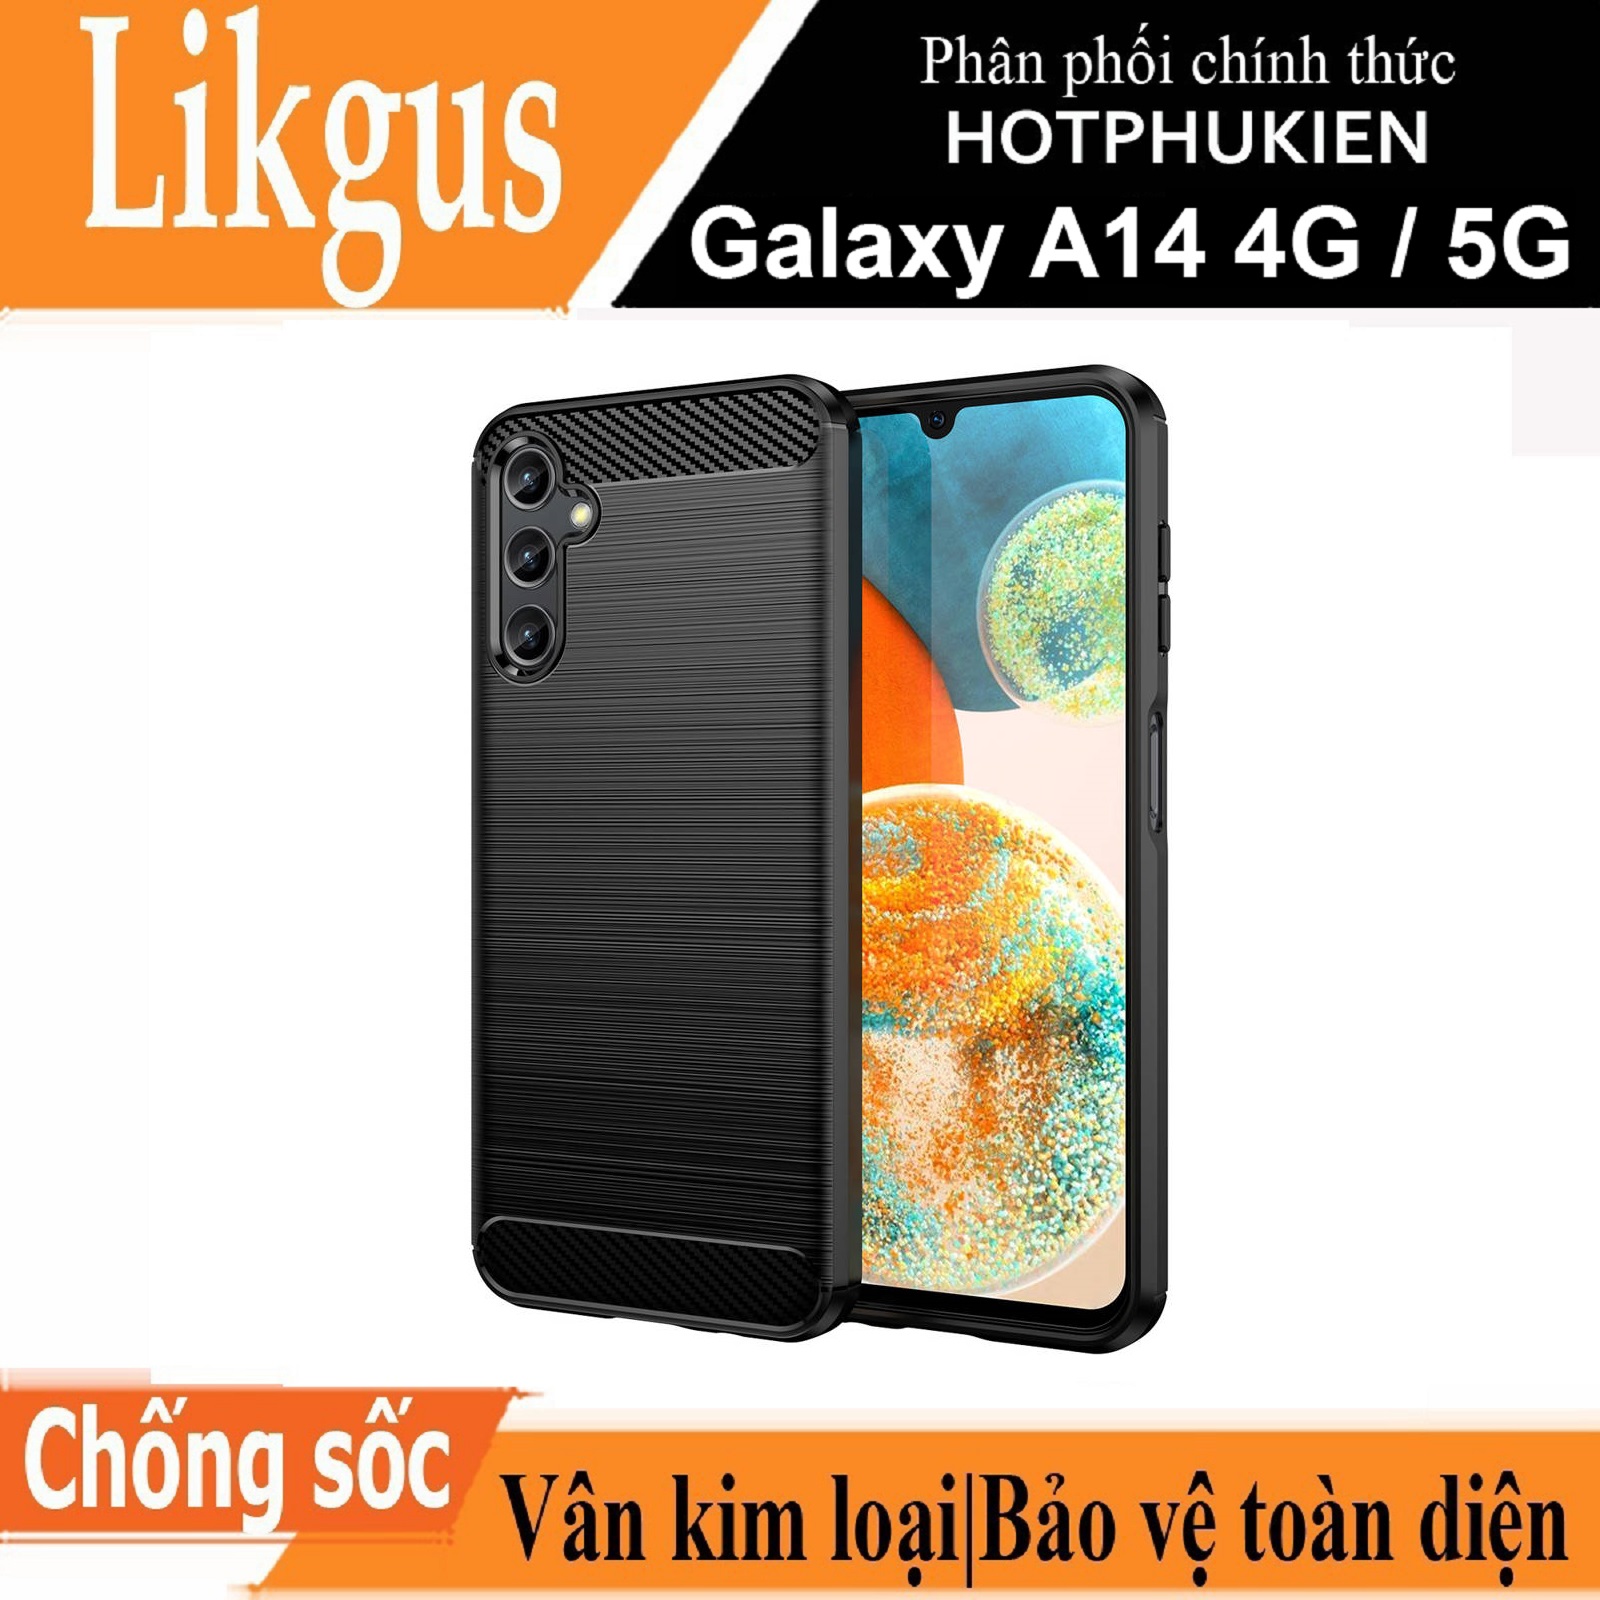 Ốp lưng chống sốc vân kim loại cho Samsung Galaxy A14 4G / 5G hiệu Likgus (chuẩn quân đội, chống va đập, chống vân tay) - Hàng nhập khẩu